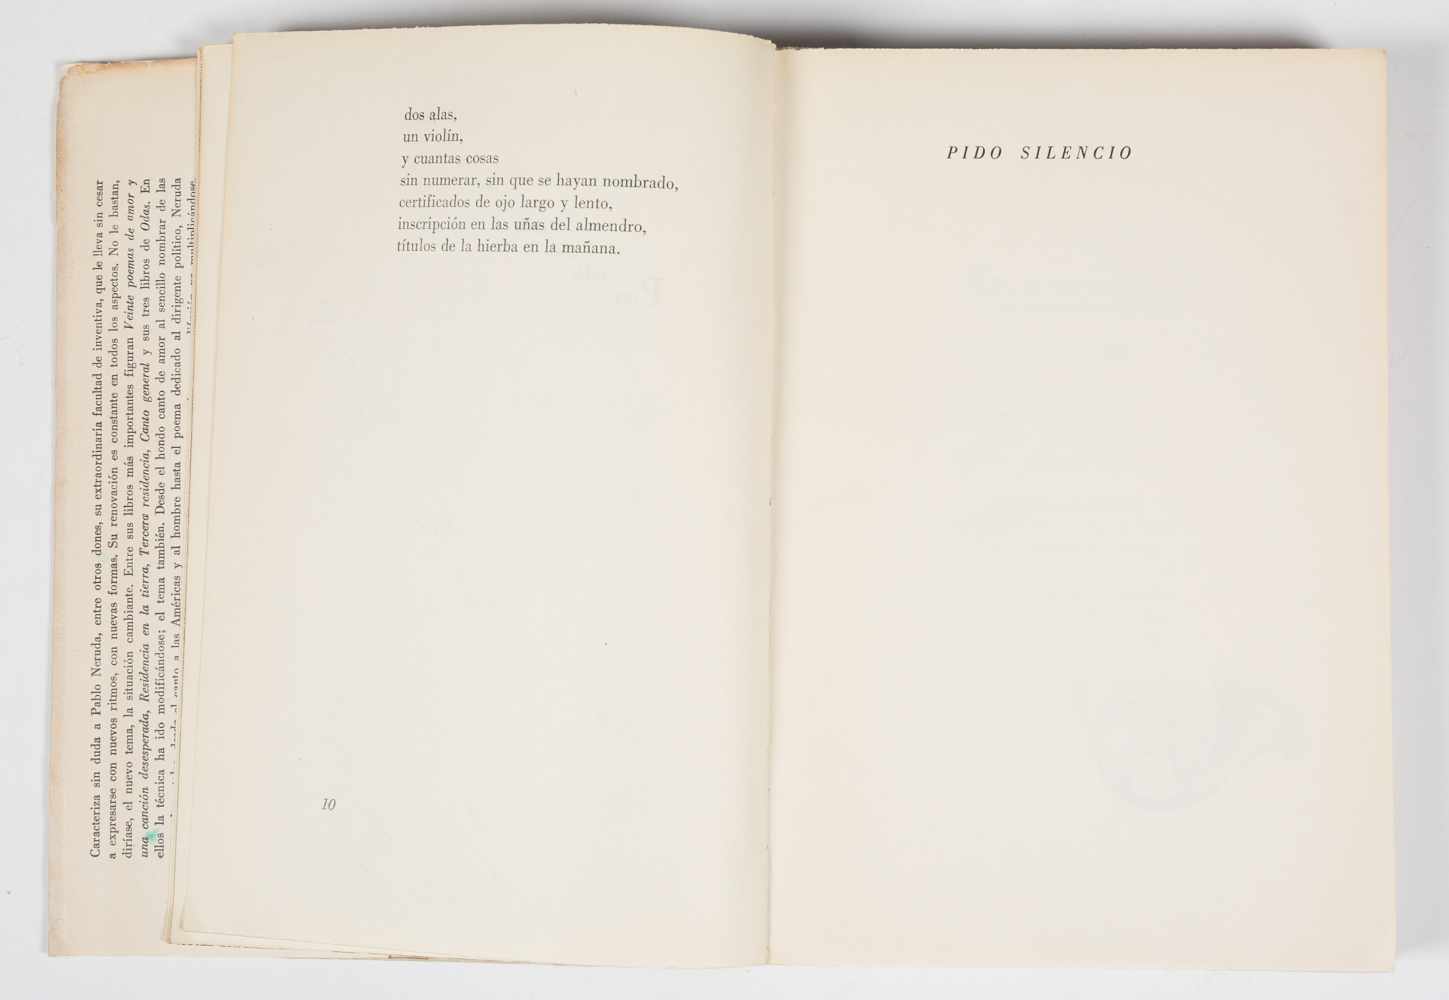 Neruda, Pablo. Estravagario (Extravagaria). 1st edition. Buenos Aires. Published by Losada, 1958. - Image 5 of 6